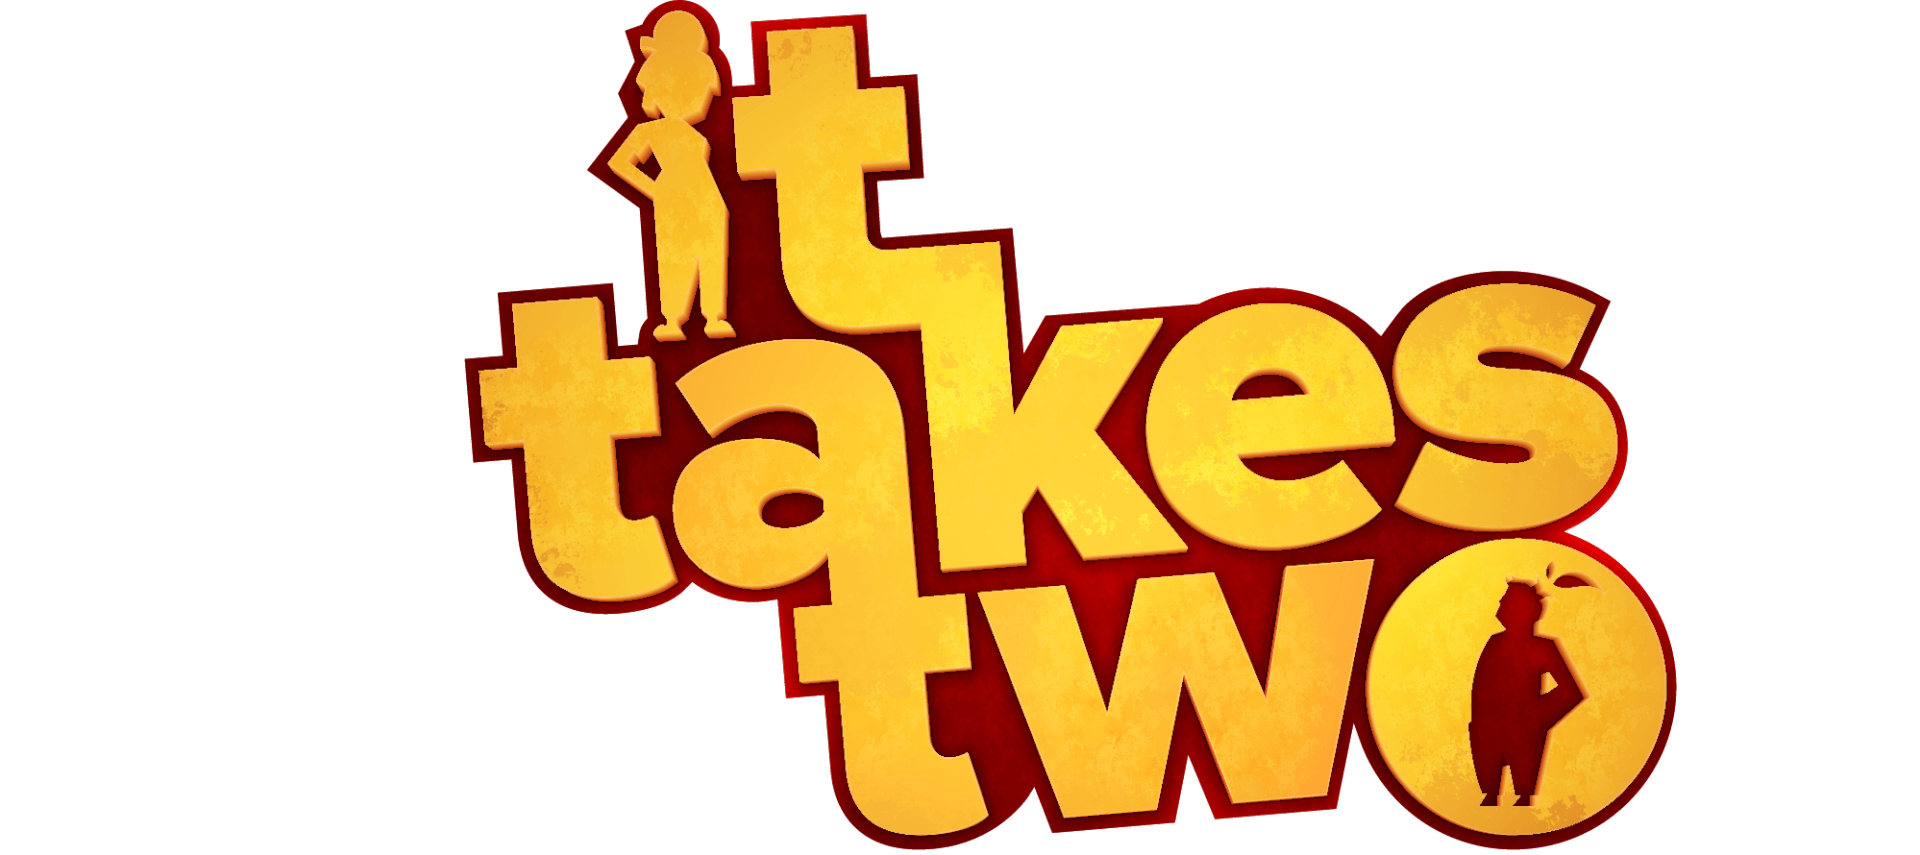 It takes two игра. Its take two игра. It takes two логотип игры. It takes two мини игры. It takes too 2